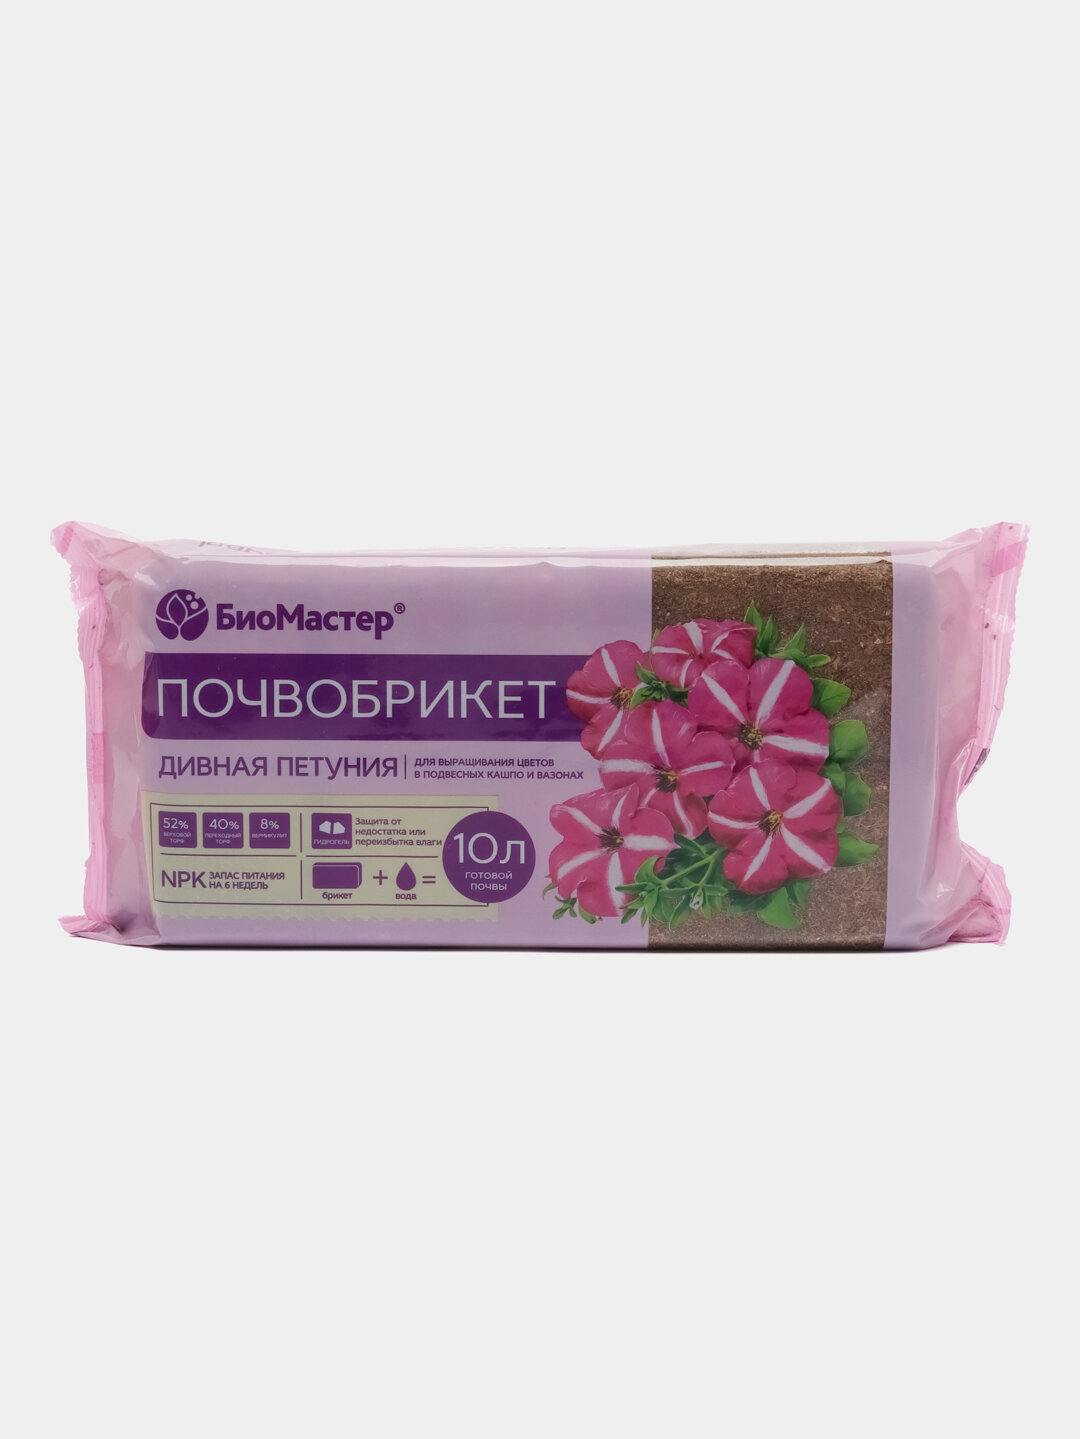 Почвобрикет "БиоМастер" готовый грунт, 5 и 10 литров Объем упаковки 10 литров, Цвет Розовый